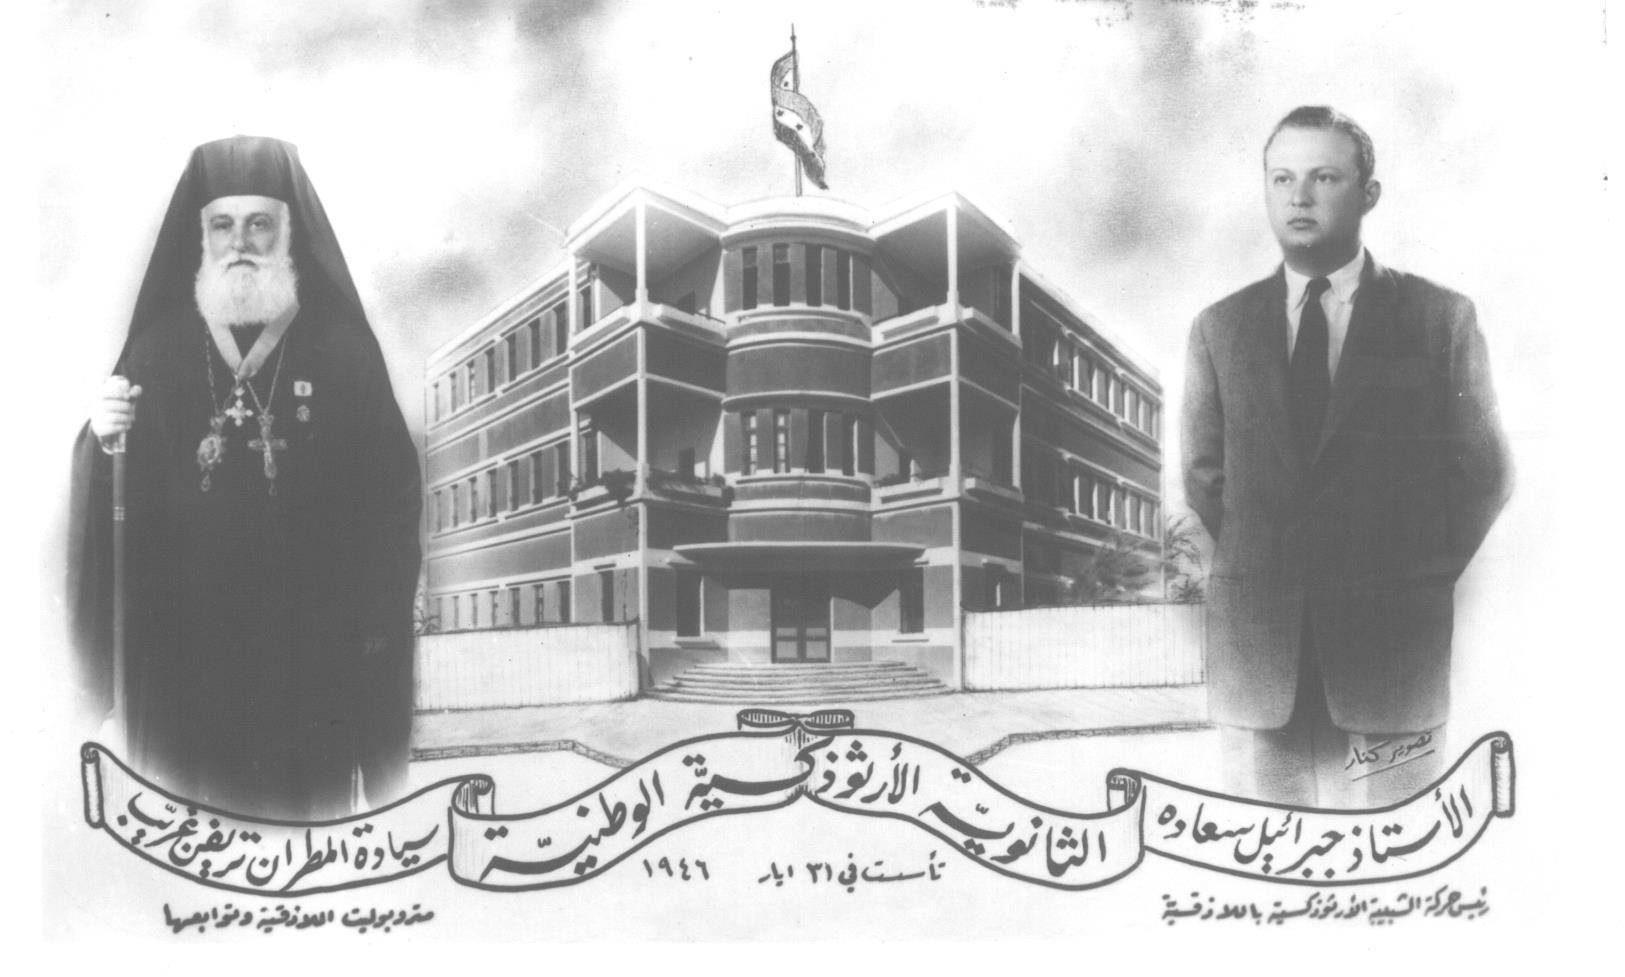 التاريخ السوري المعاصر - صورة تذكارية لتأسيس مدرسة الكلية في اللاذقية عام 1946